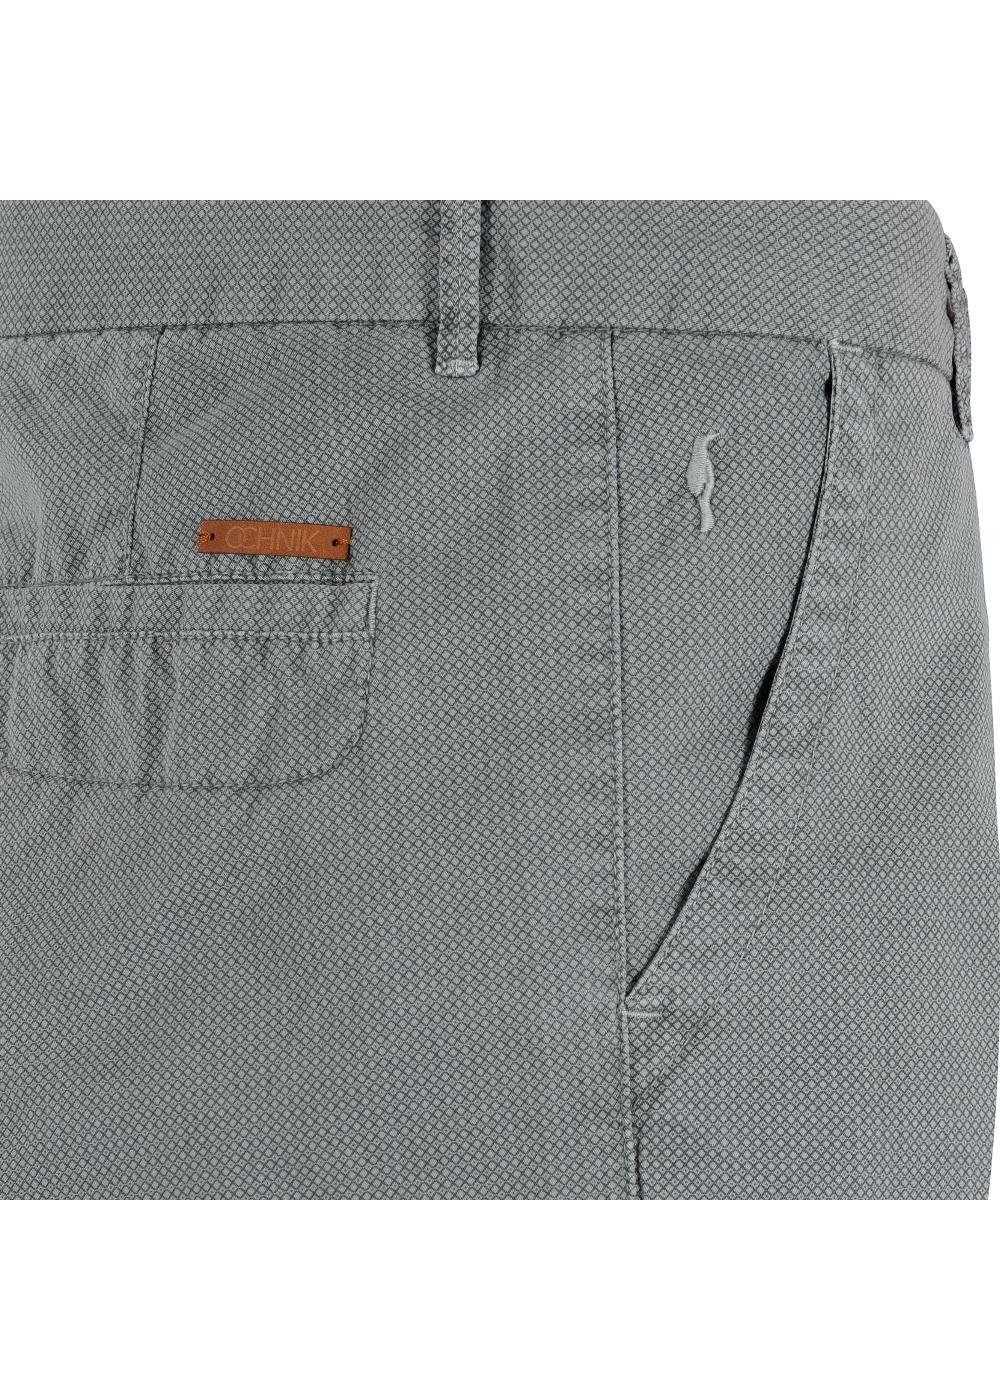 Spodnie męskie SPOMT-0036-91(W20)